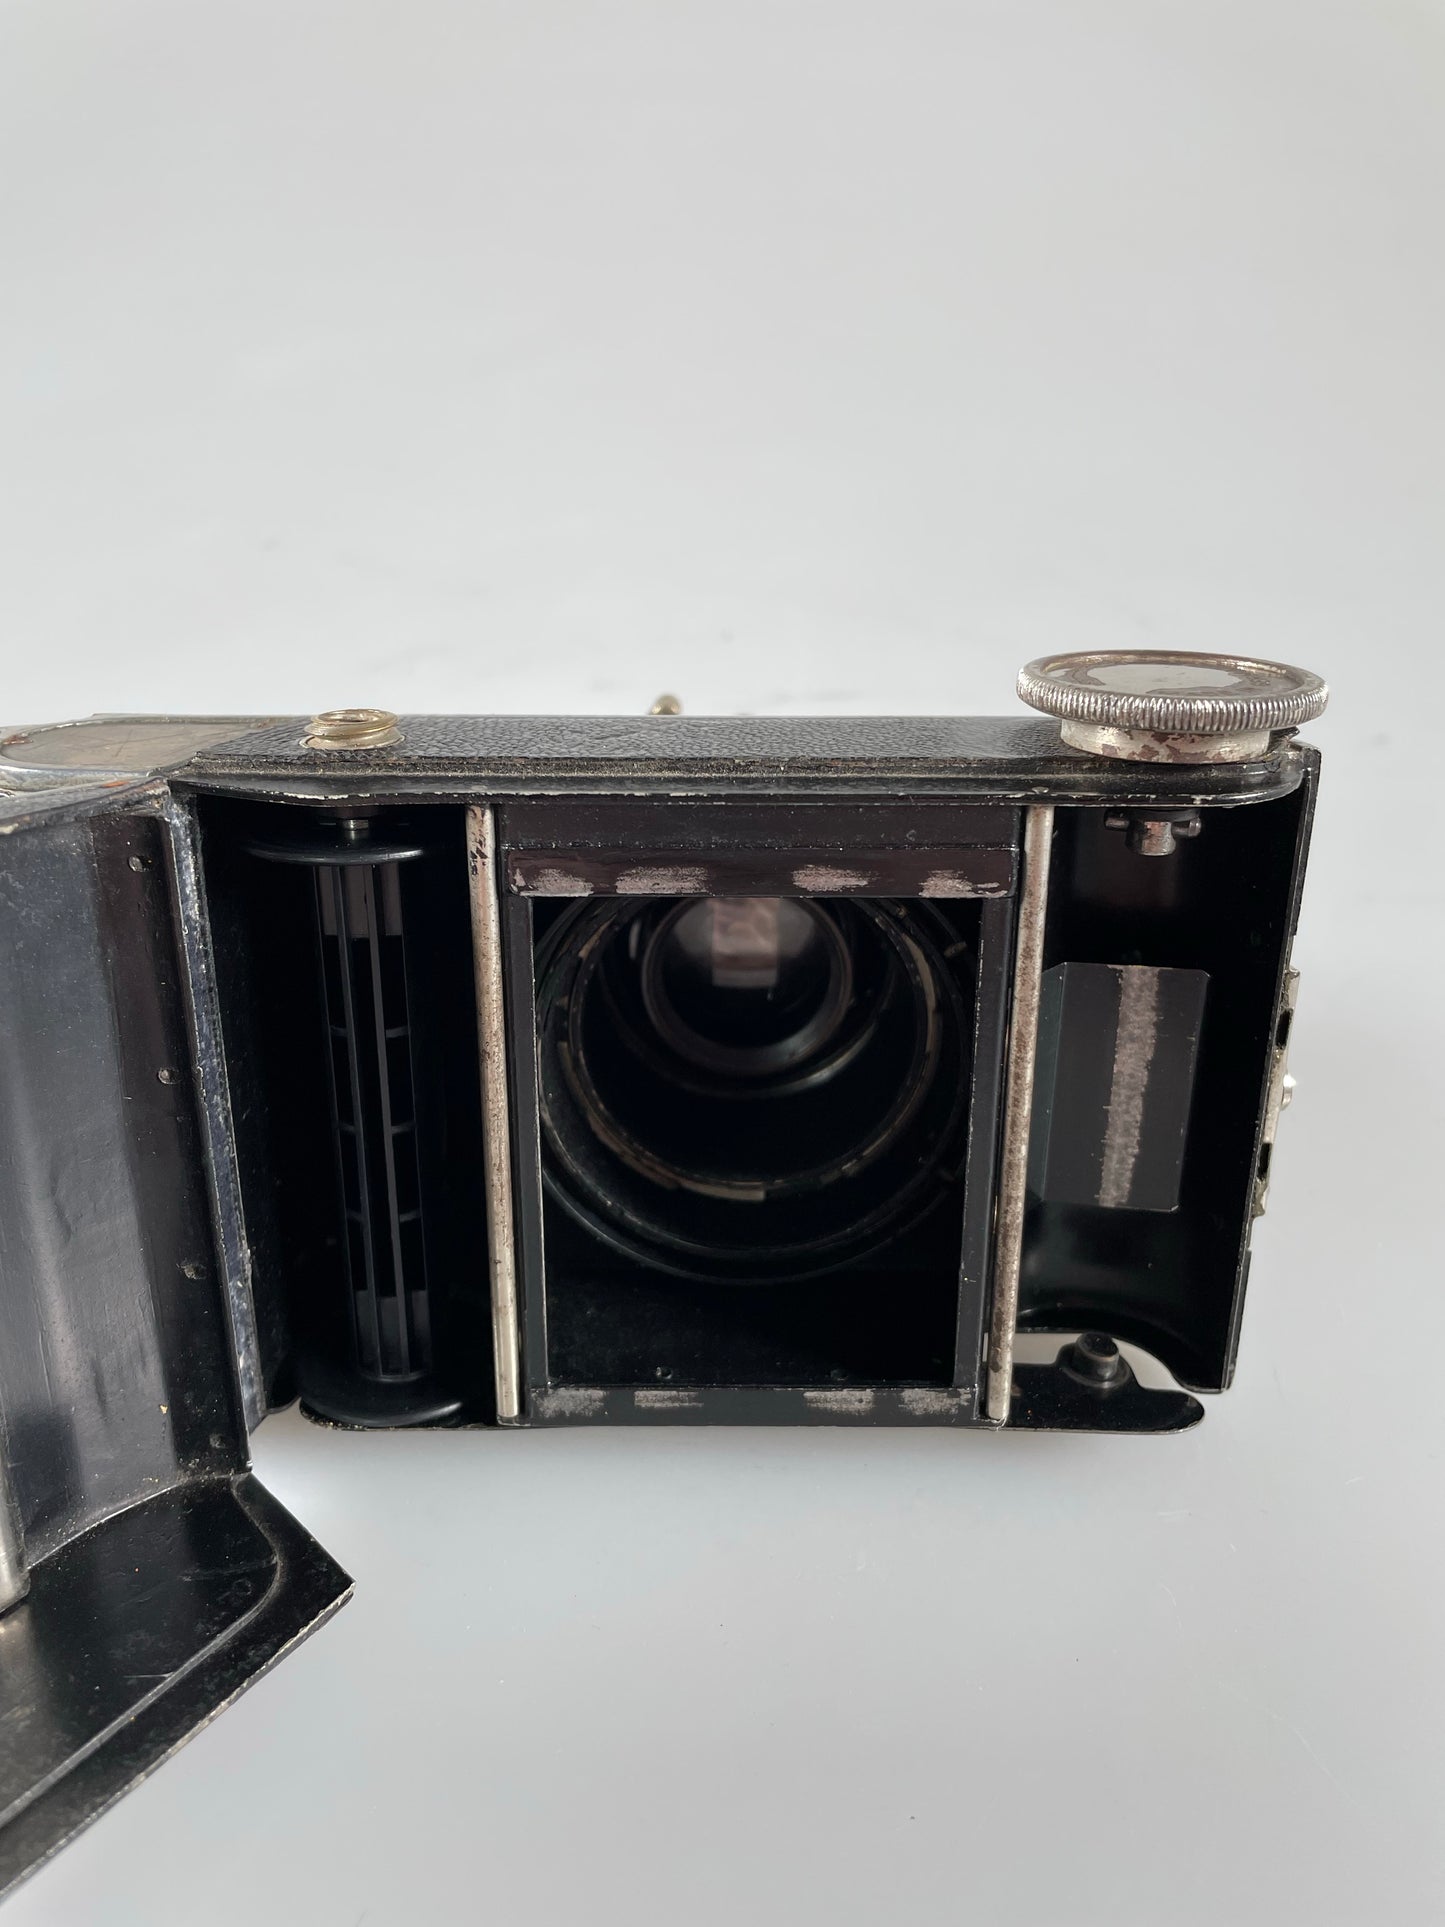 Roland Model 1 Rangefinder camera w/Plasmat lens 70mm f2.7 RARE